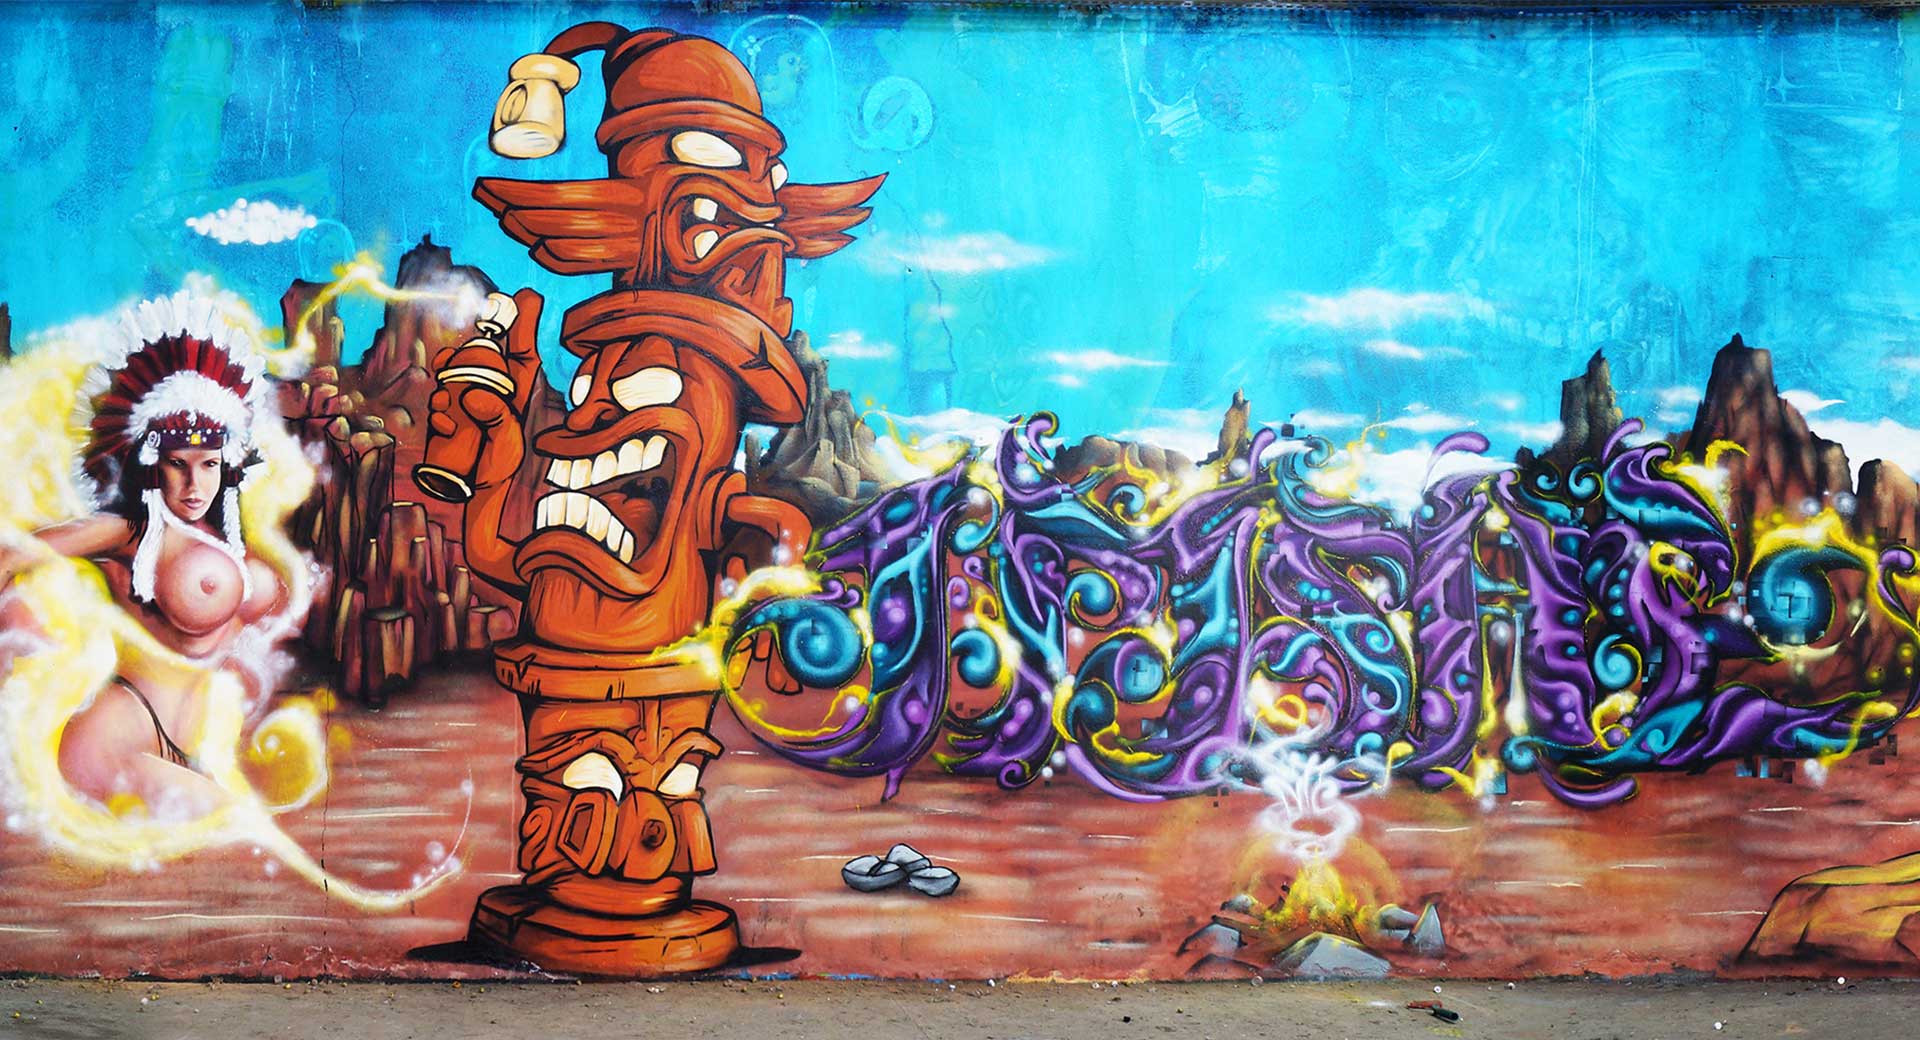 13_mite_apo_mite_graffiti